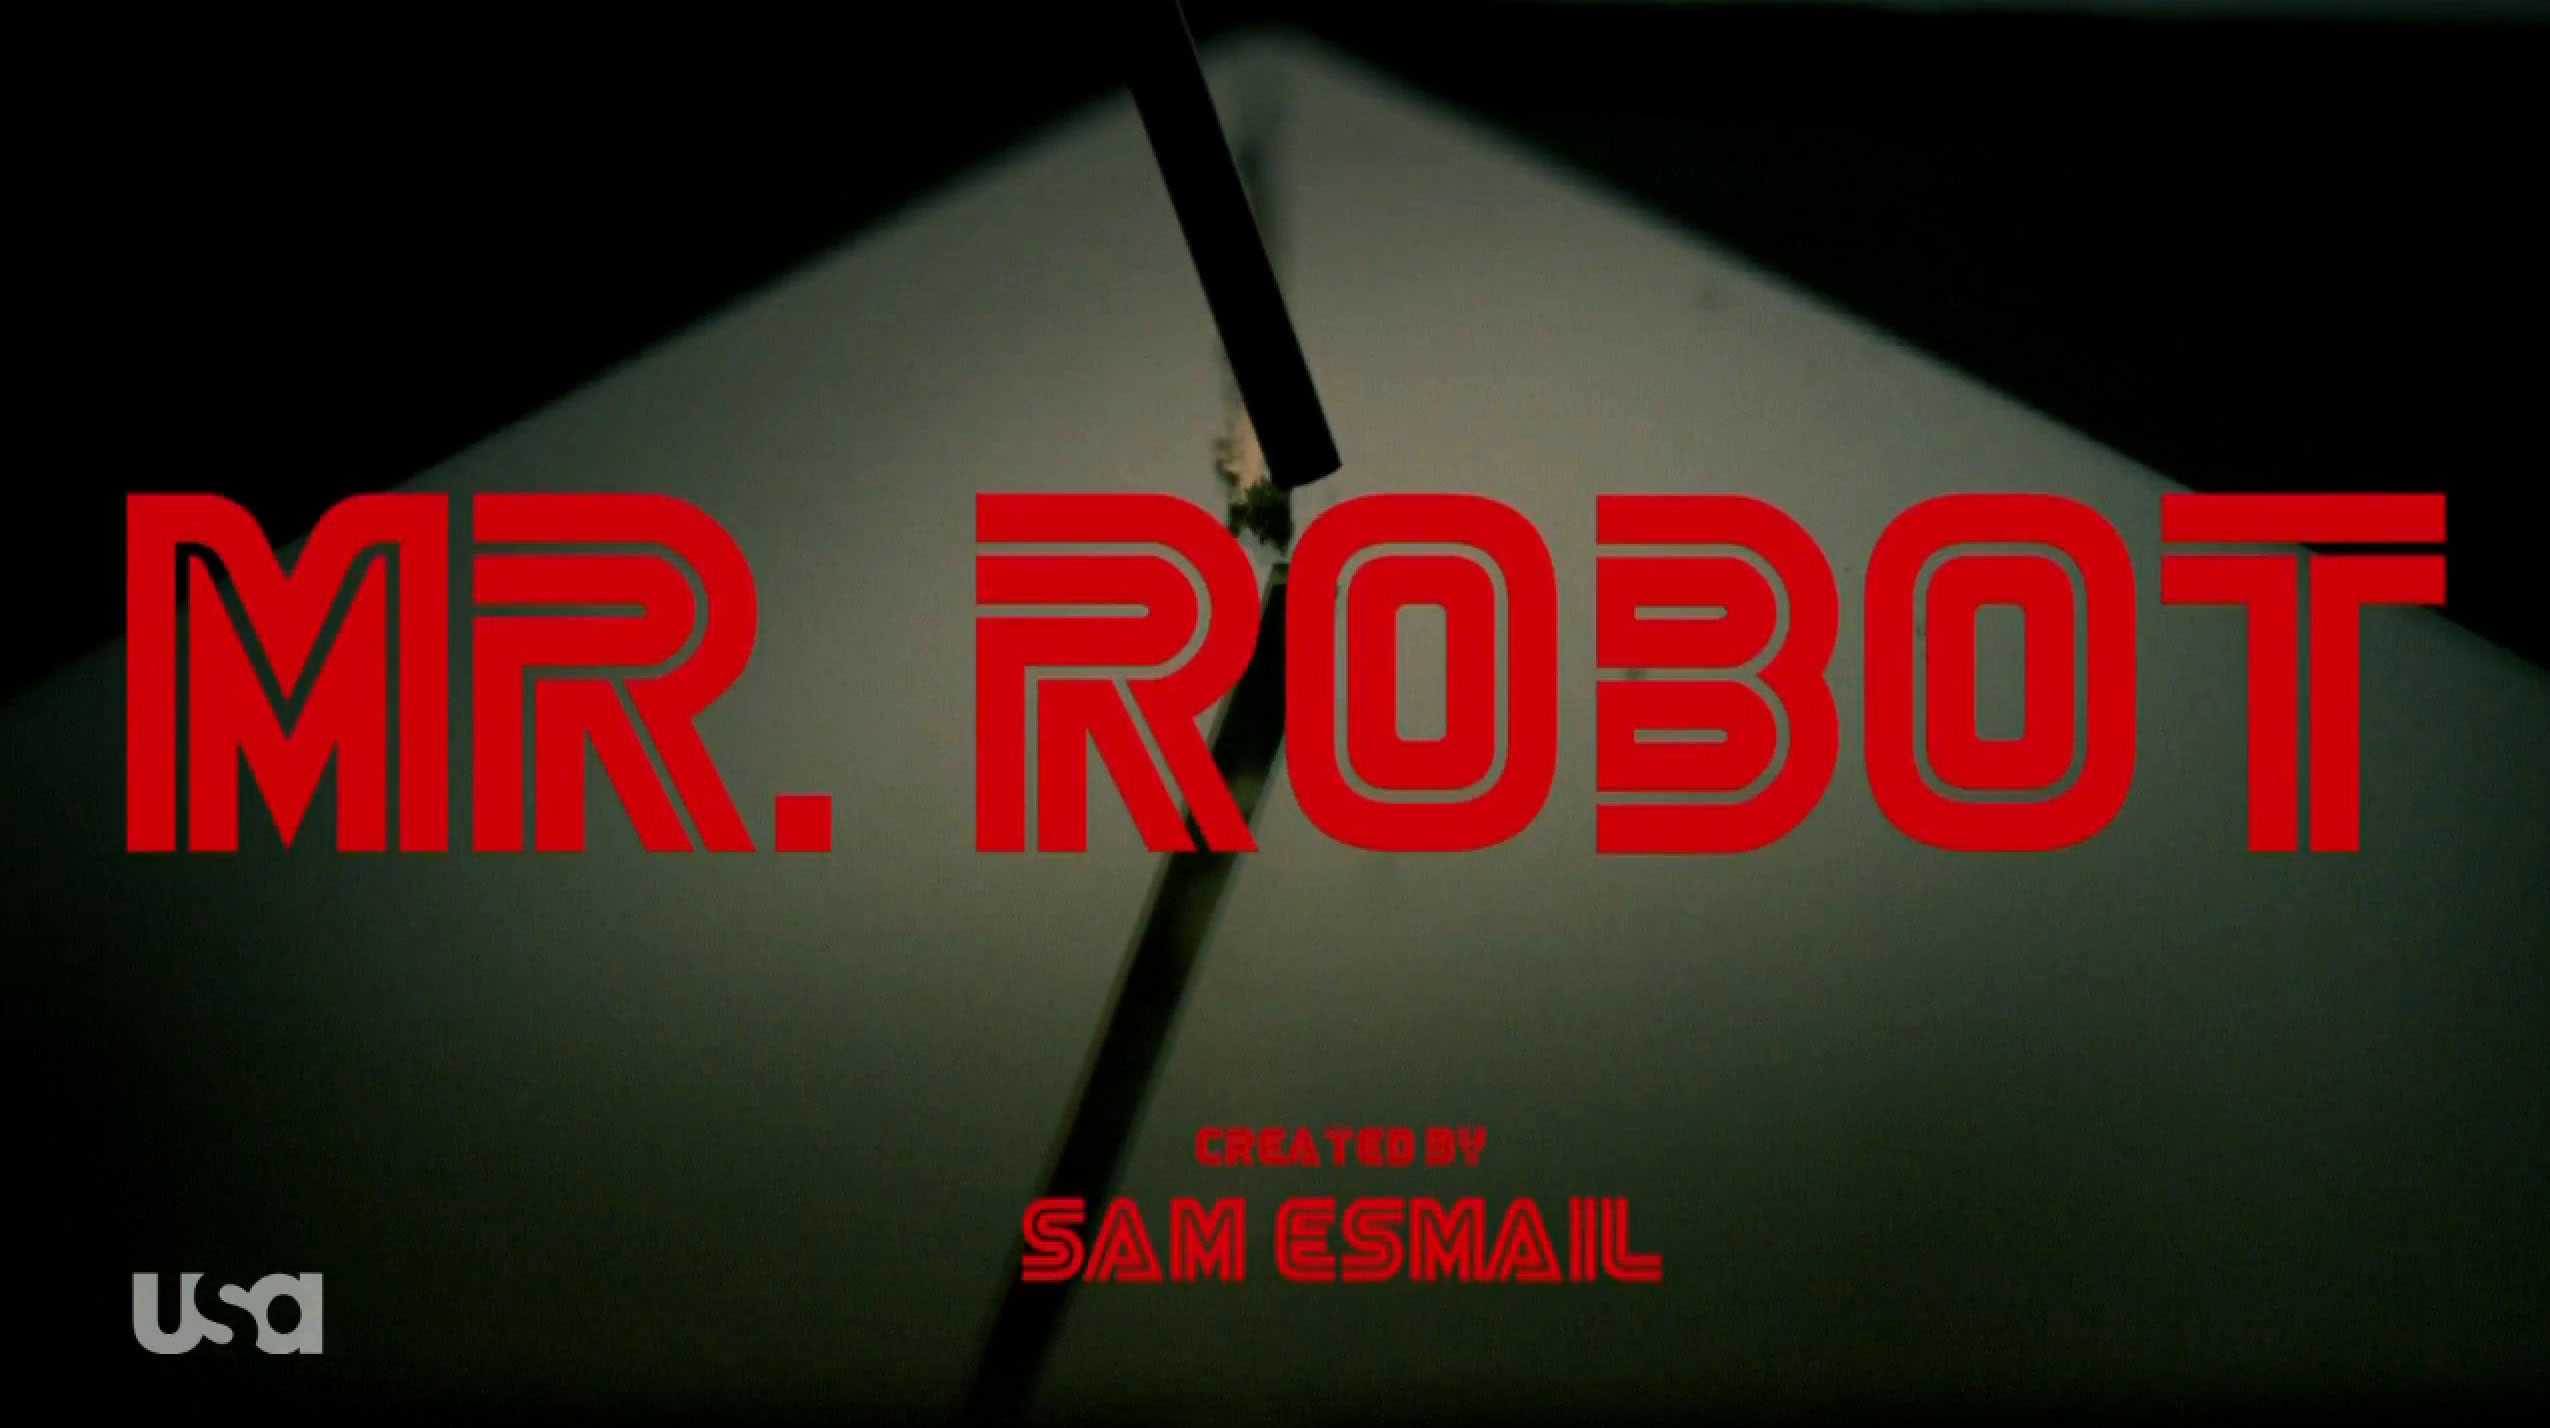 Mr. Robot - Season 2 - Grace Gummer Cast as a Series Regular